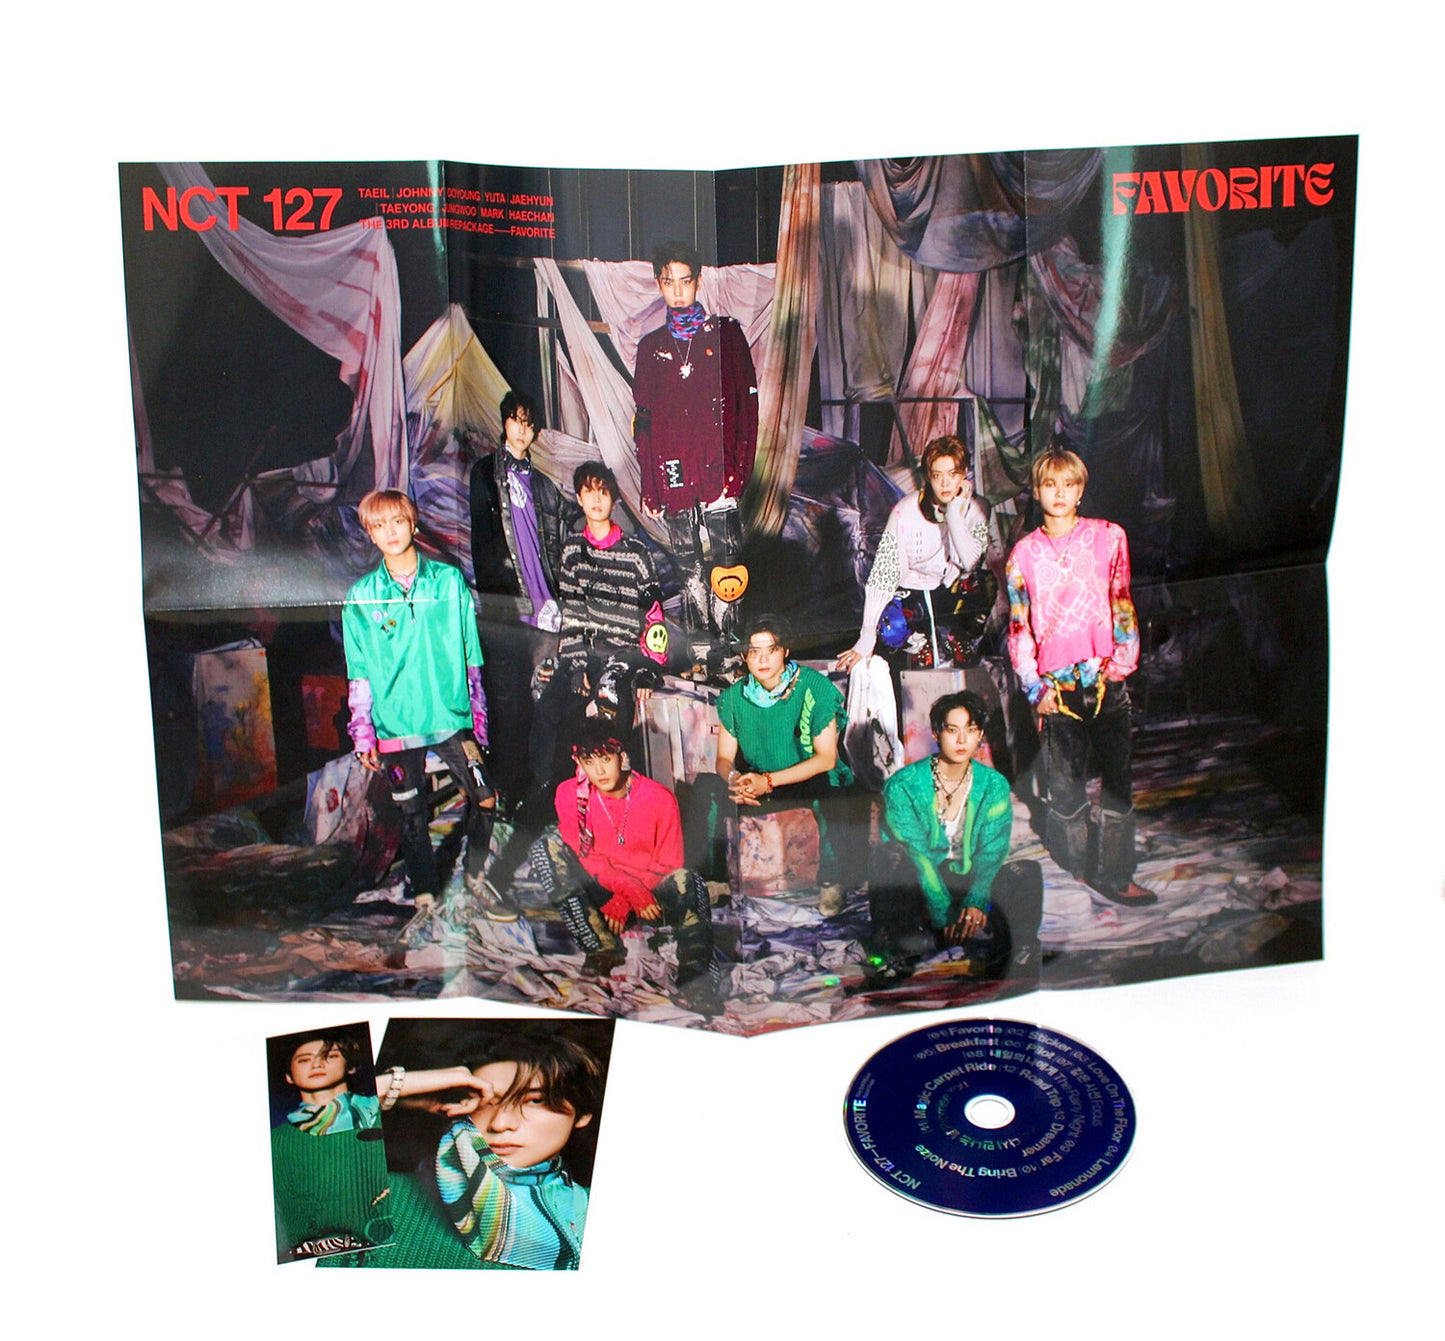 Reempaquetado del tercer álbum de NCT 127: Favorito | Catarsis Ver.